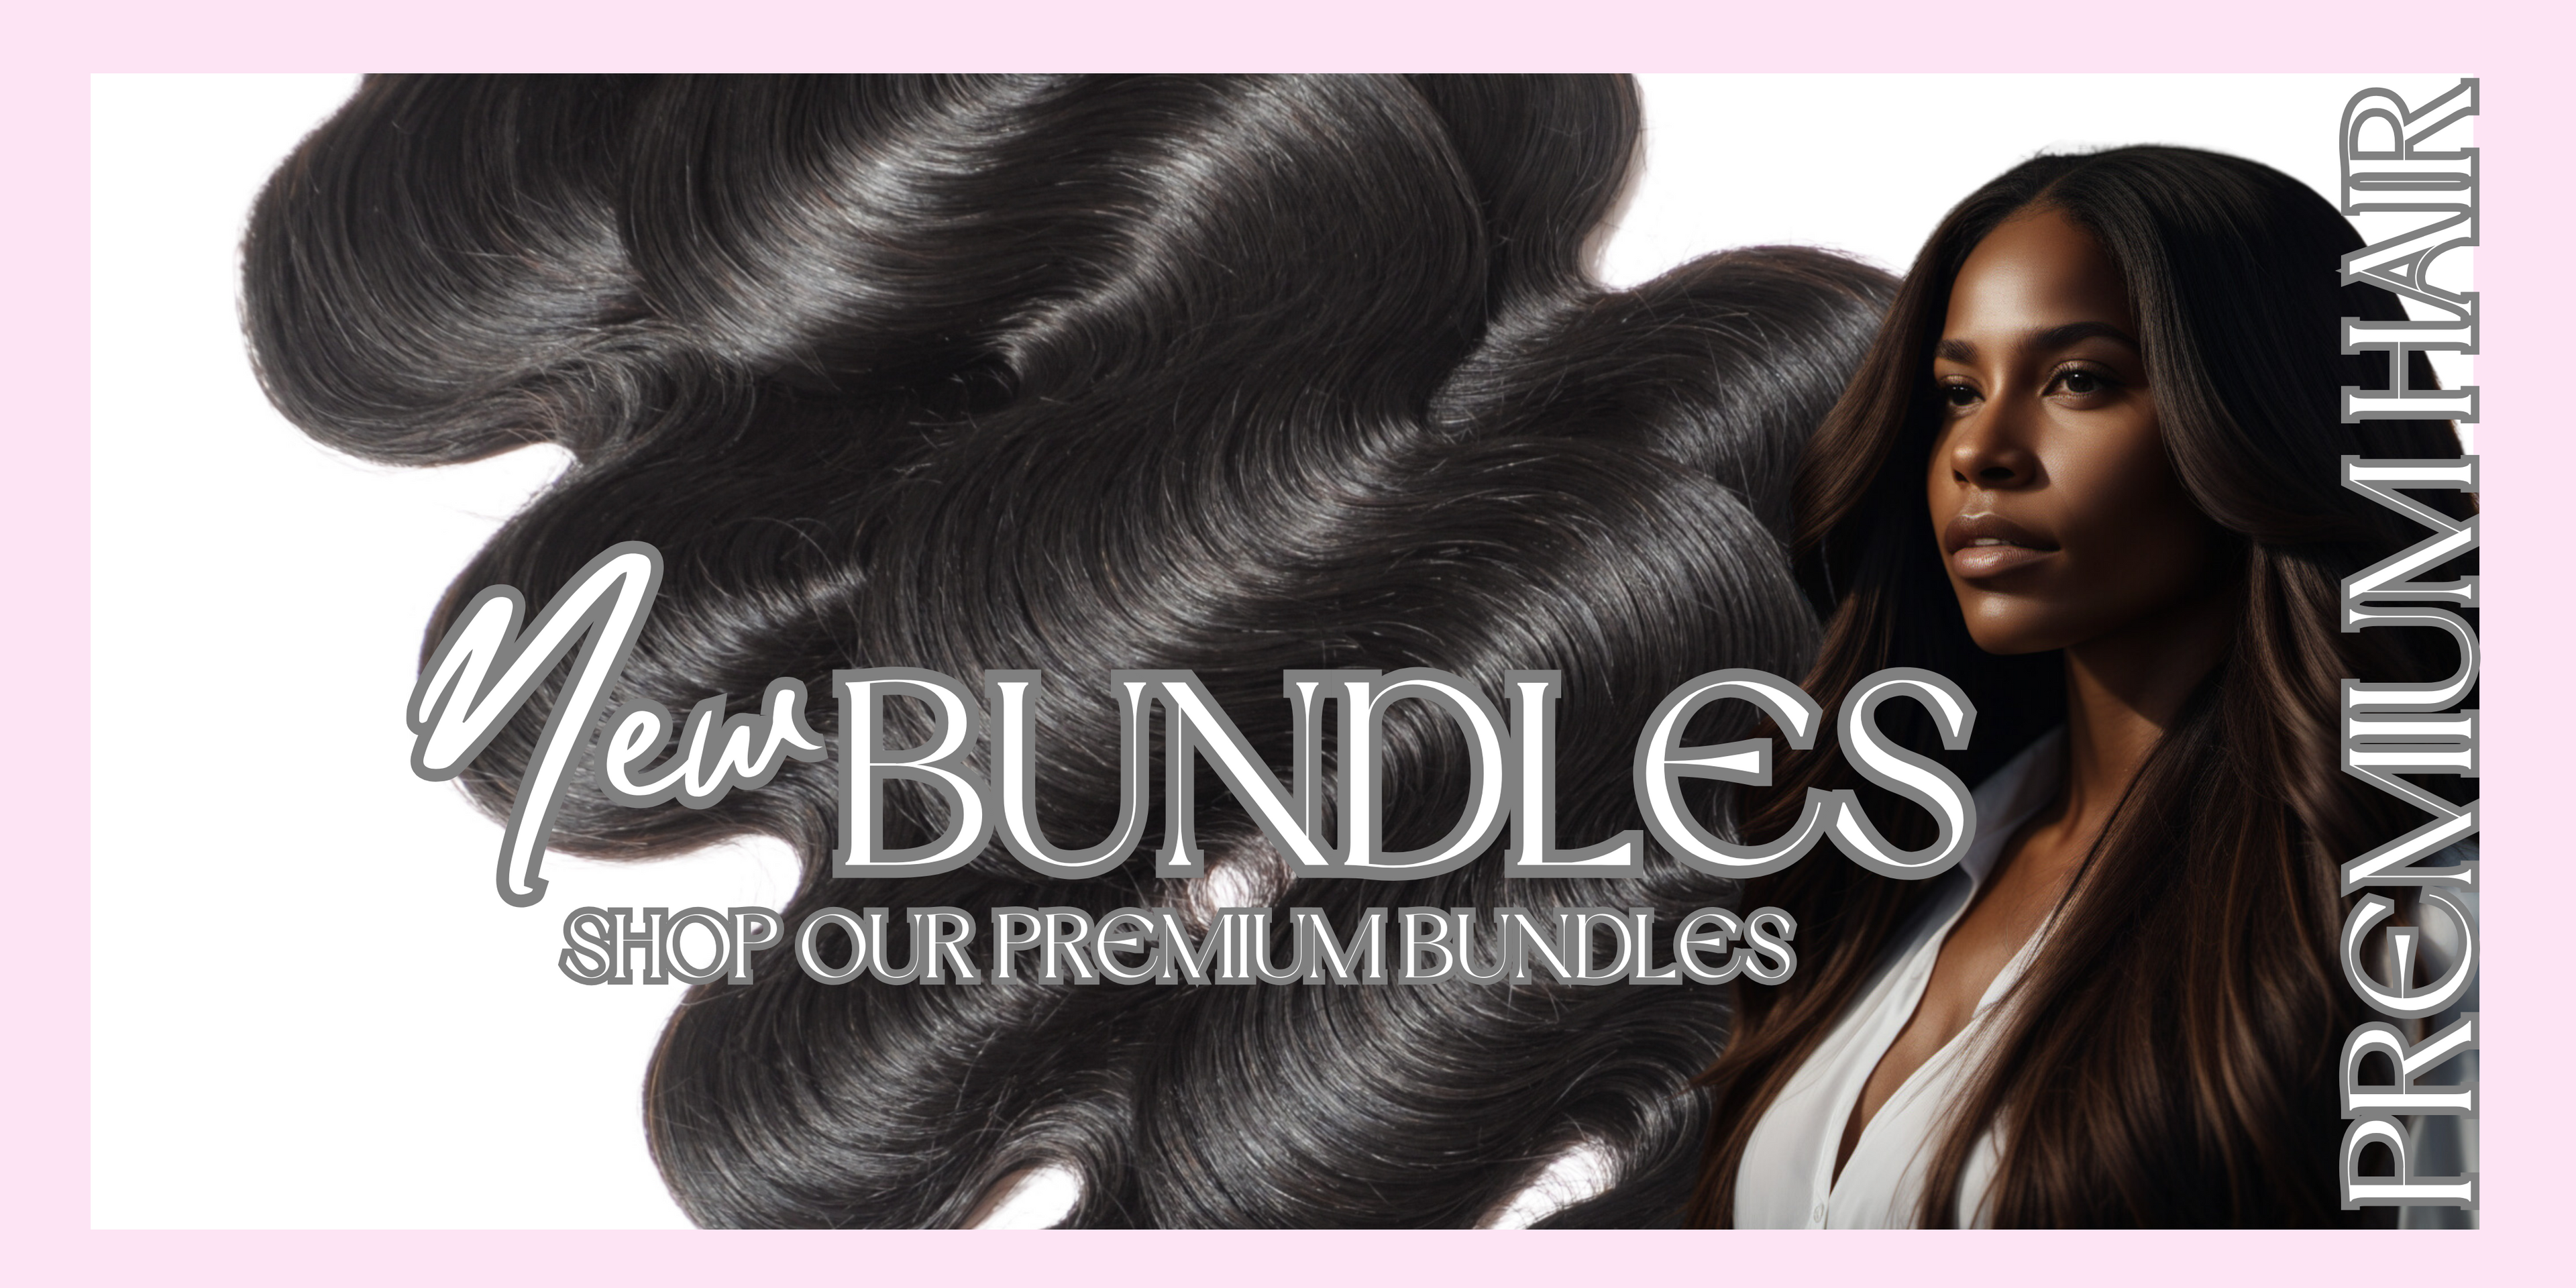 New Bundles Shop Our Premium Bundles Hair Extensions Akire Nicole Beauty